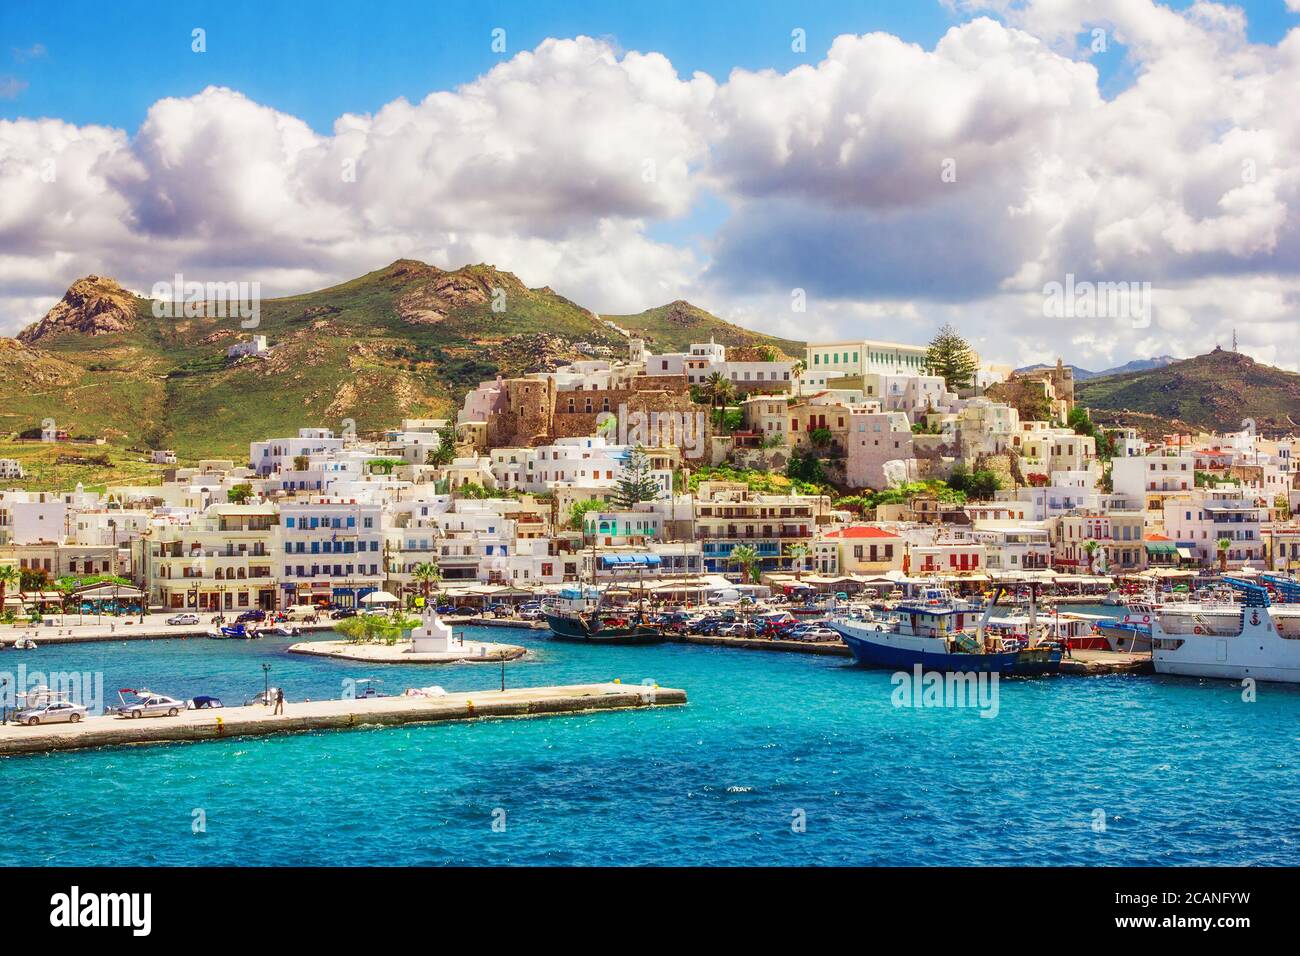 Port sur l'île de Naxos, Grèce Banque D'Images